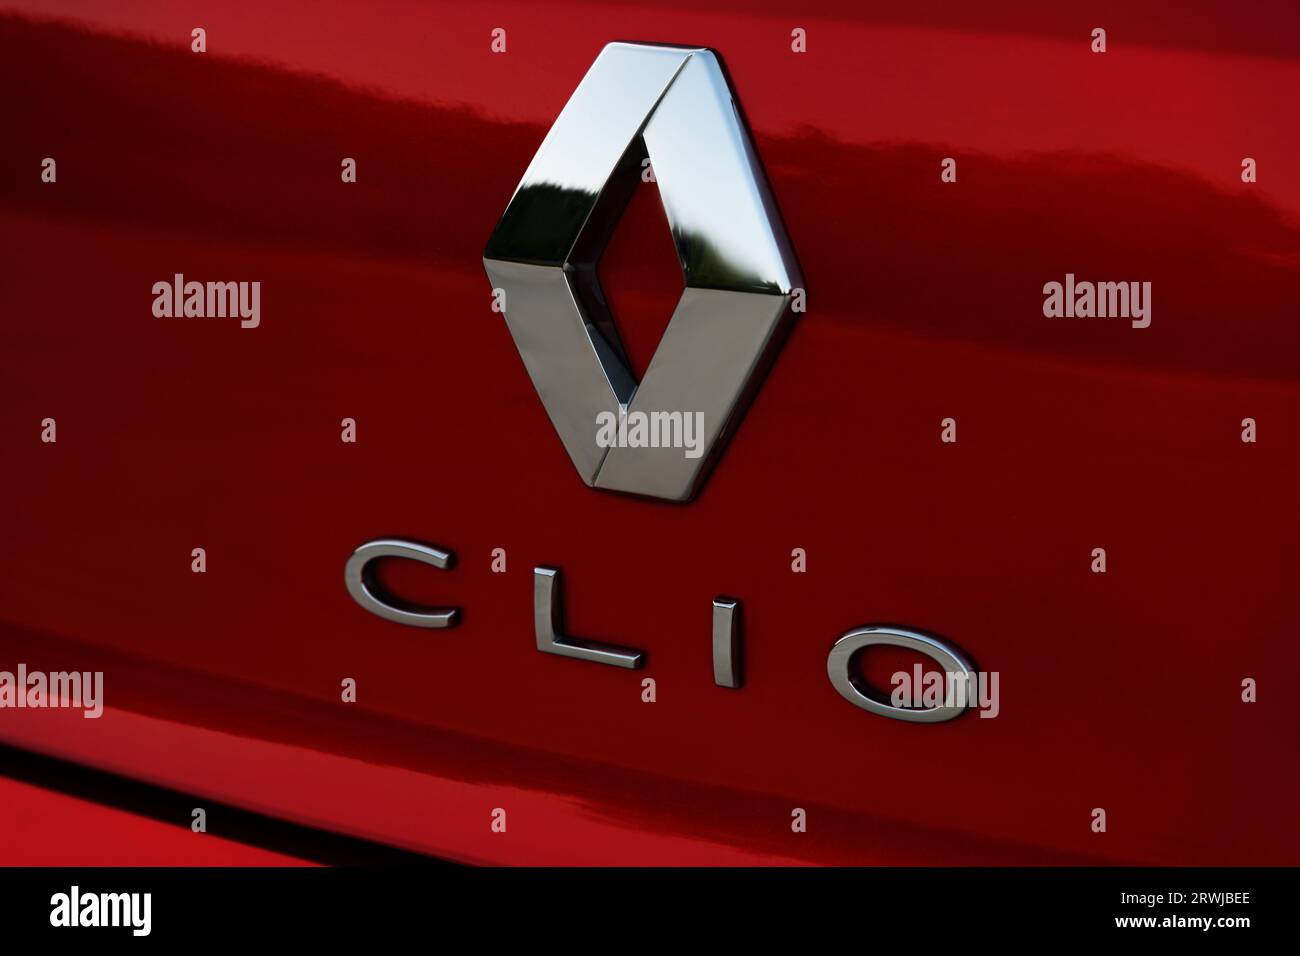 Izmir, Turchia - 2 agosto 2023: Un primo piano del logo sul bagagliaio di una Renault Clio rossa, che cattura i dettagli intricati e l'identità del marchio. Foto Stock